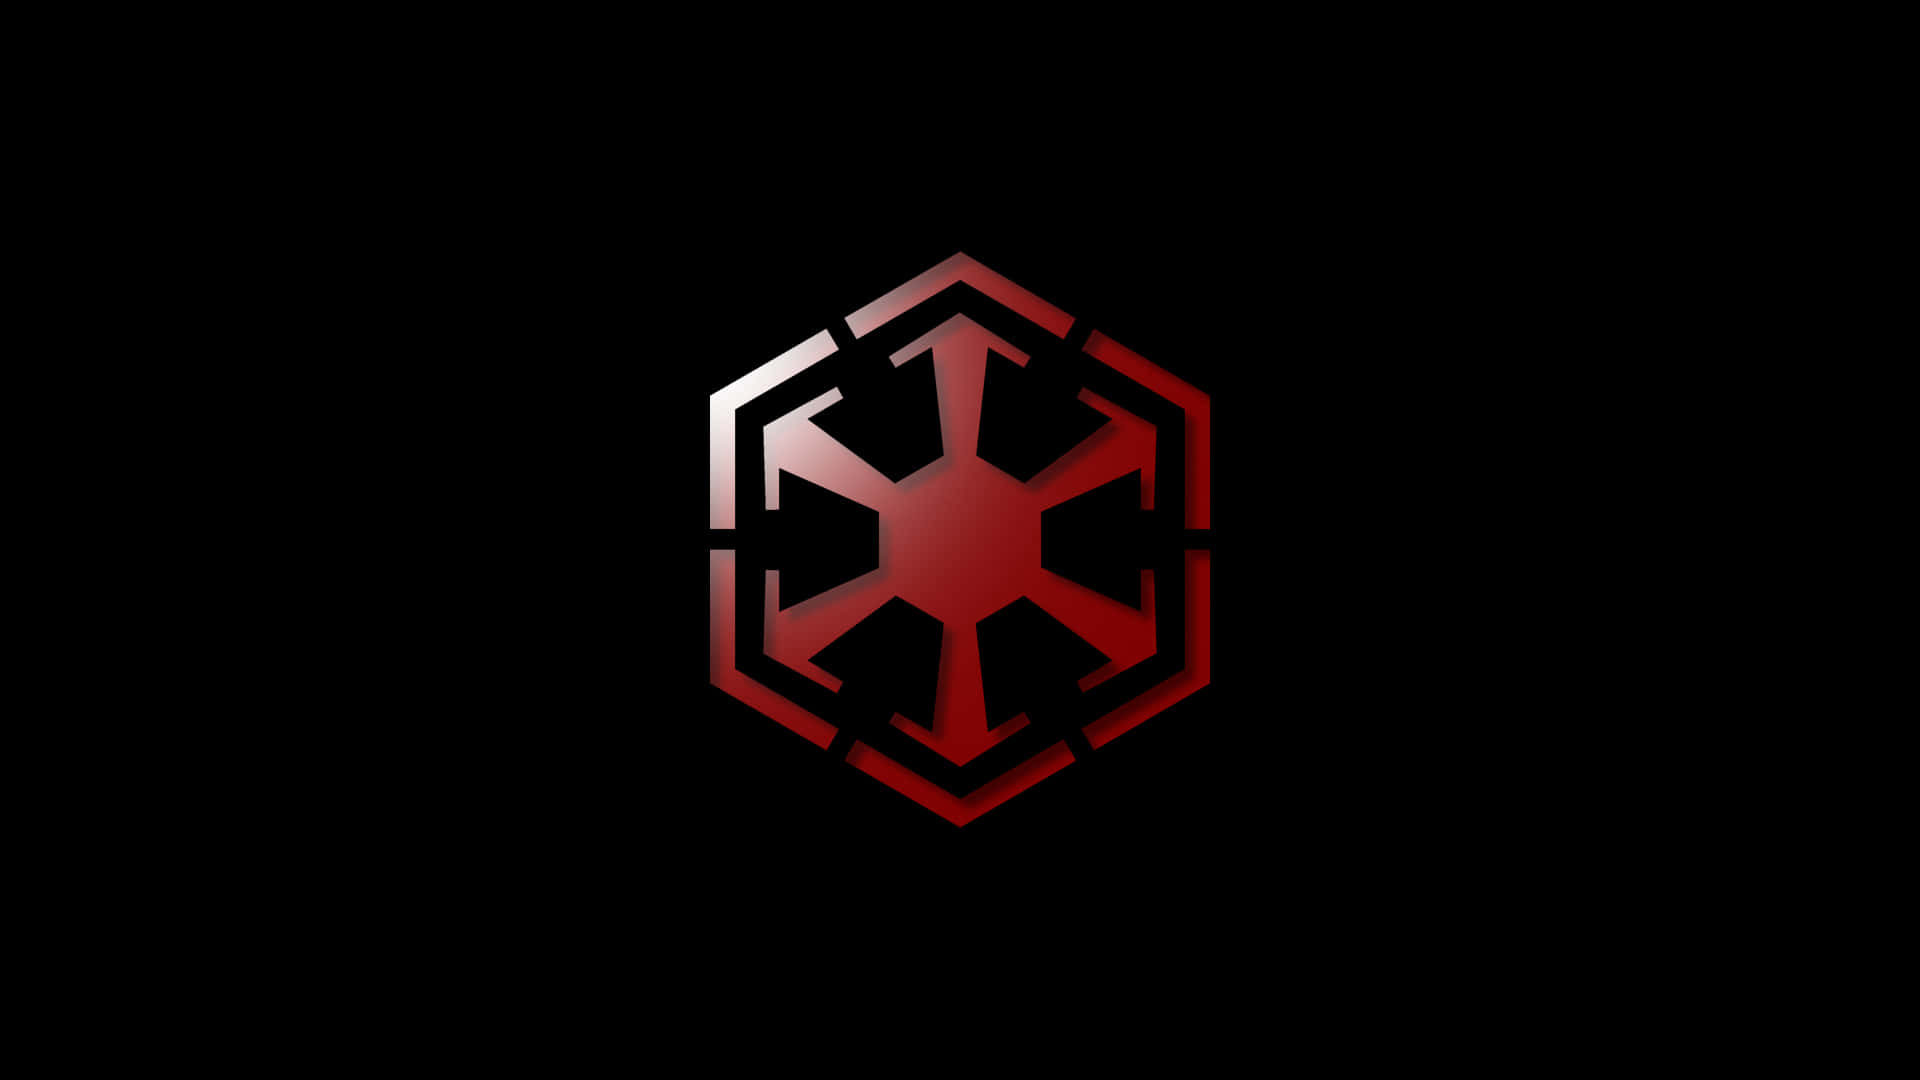 Star Wars Empire logo Wallpaper